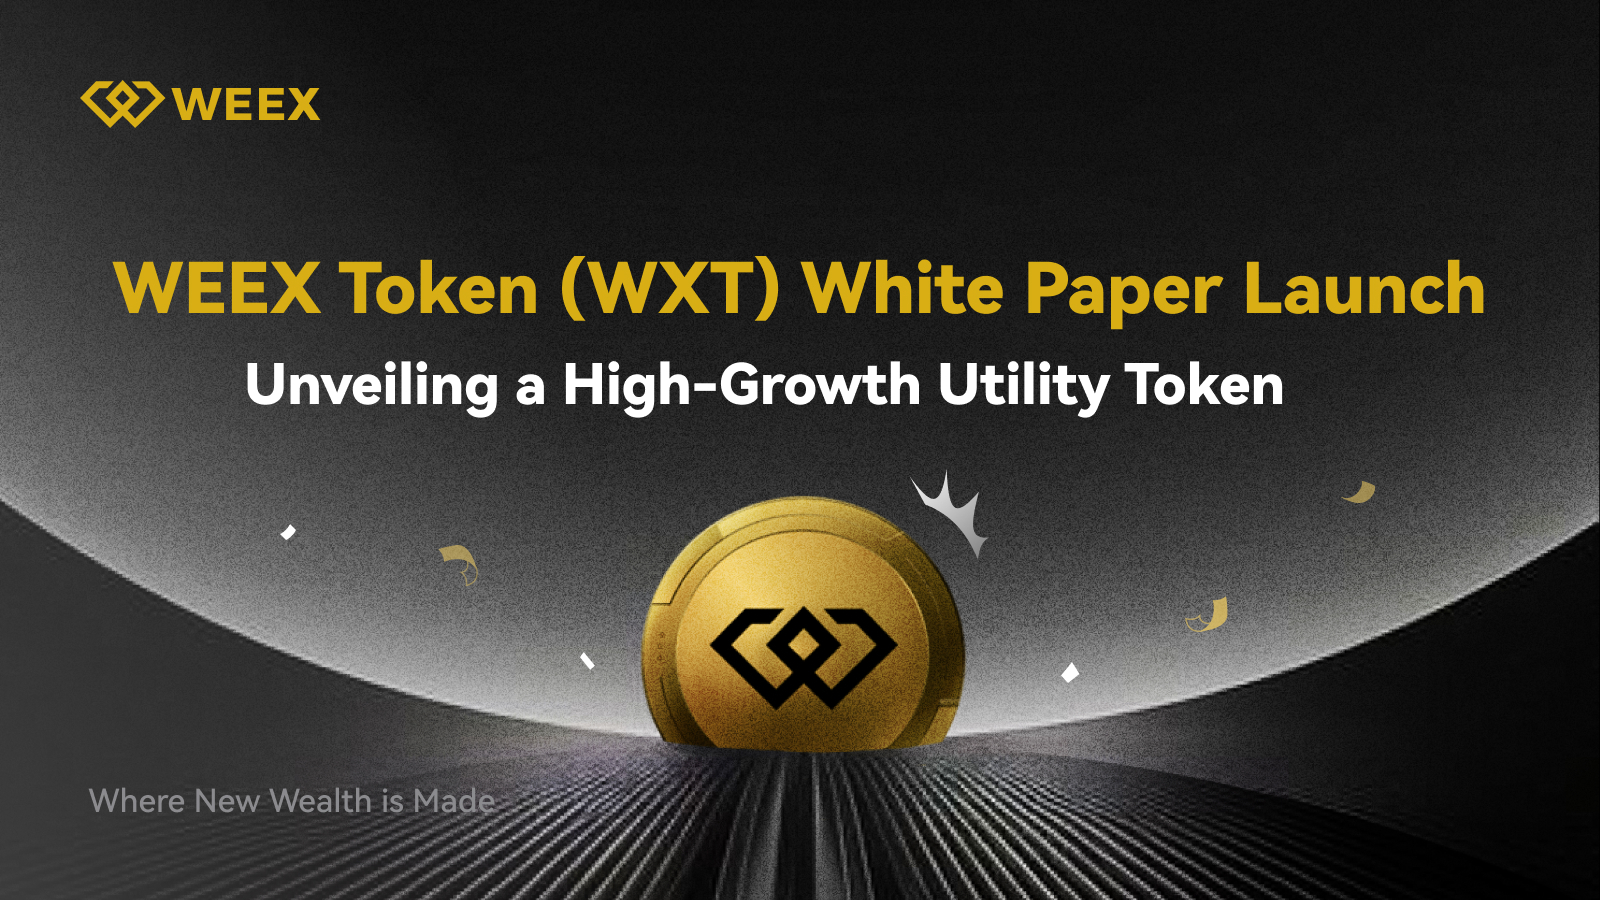 إطلاق ورقة بيضاء لرمز WEEX (WXT): الكشف عن رمز فائدة عالي النمو